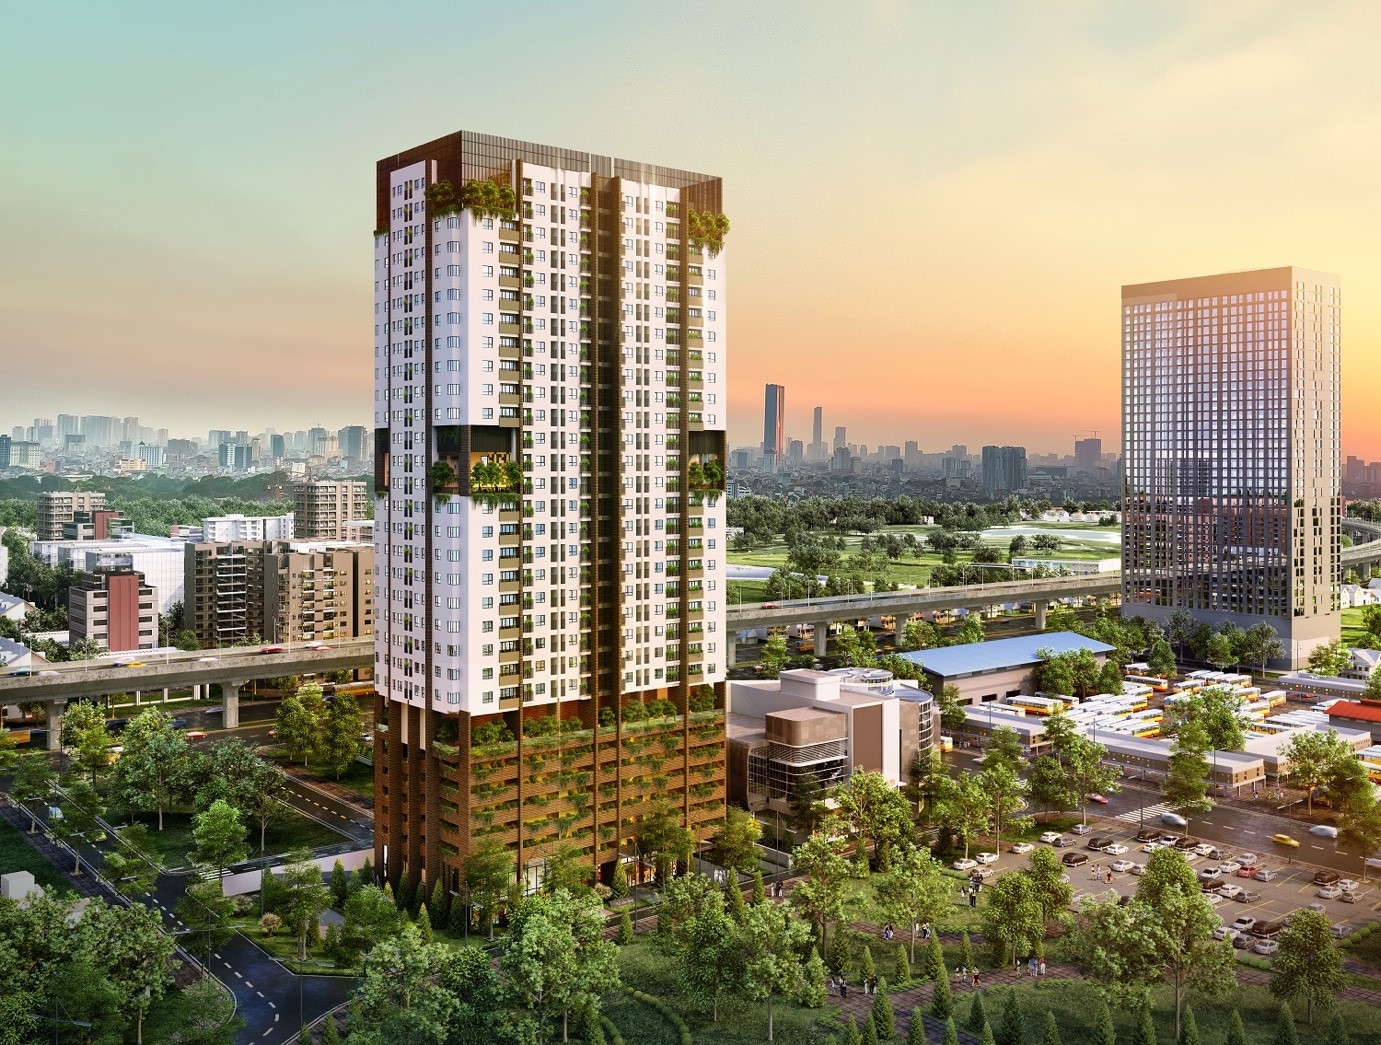 FLC Green Apartment tọa lạc giữa trung tâm Mỹ Đình – cửa ngõ phía Tây của thủ đô, nơi chứng kiến sự phát triển mạnh mẽ của giao thông và xu hướng dịch chuyển về phía Tây của cộng đồng cư dân sinh sống và làm việc tại Hà Nội.